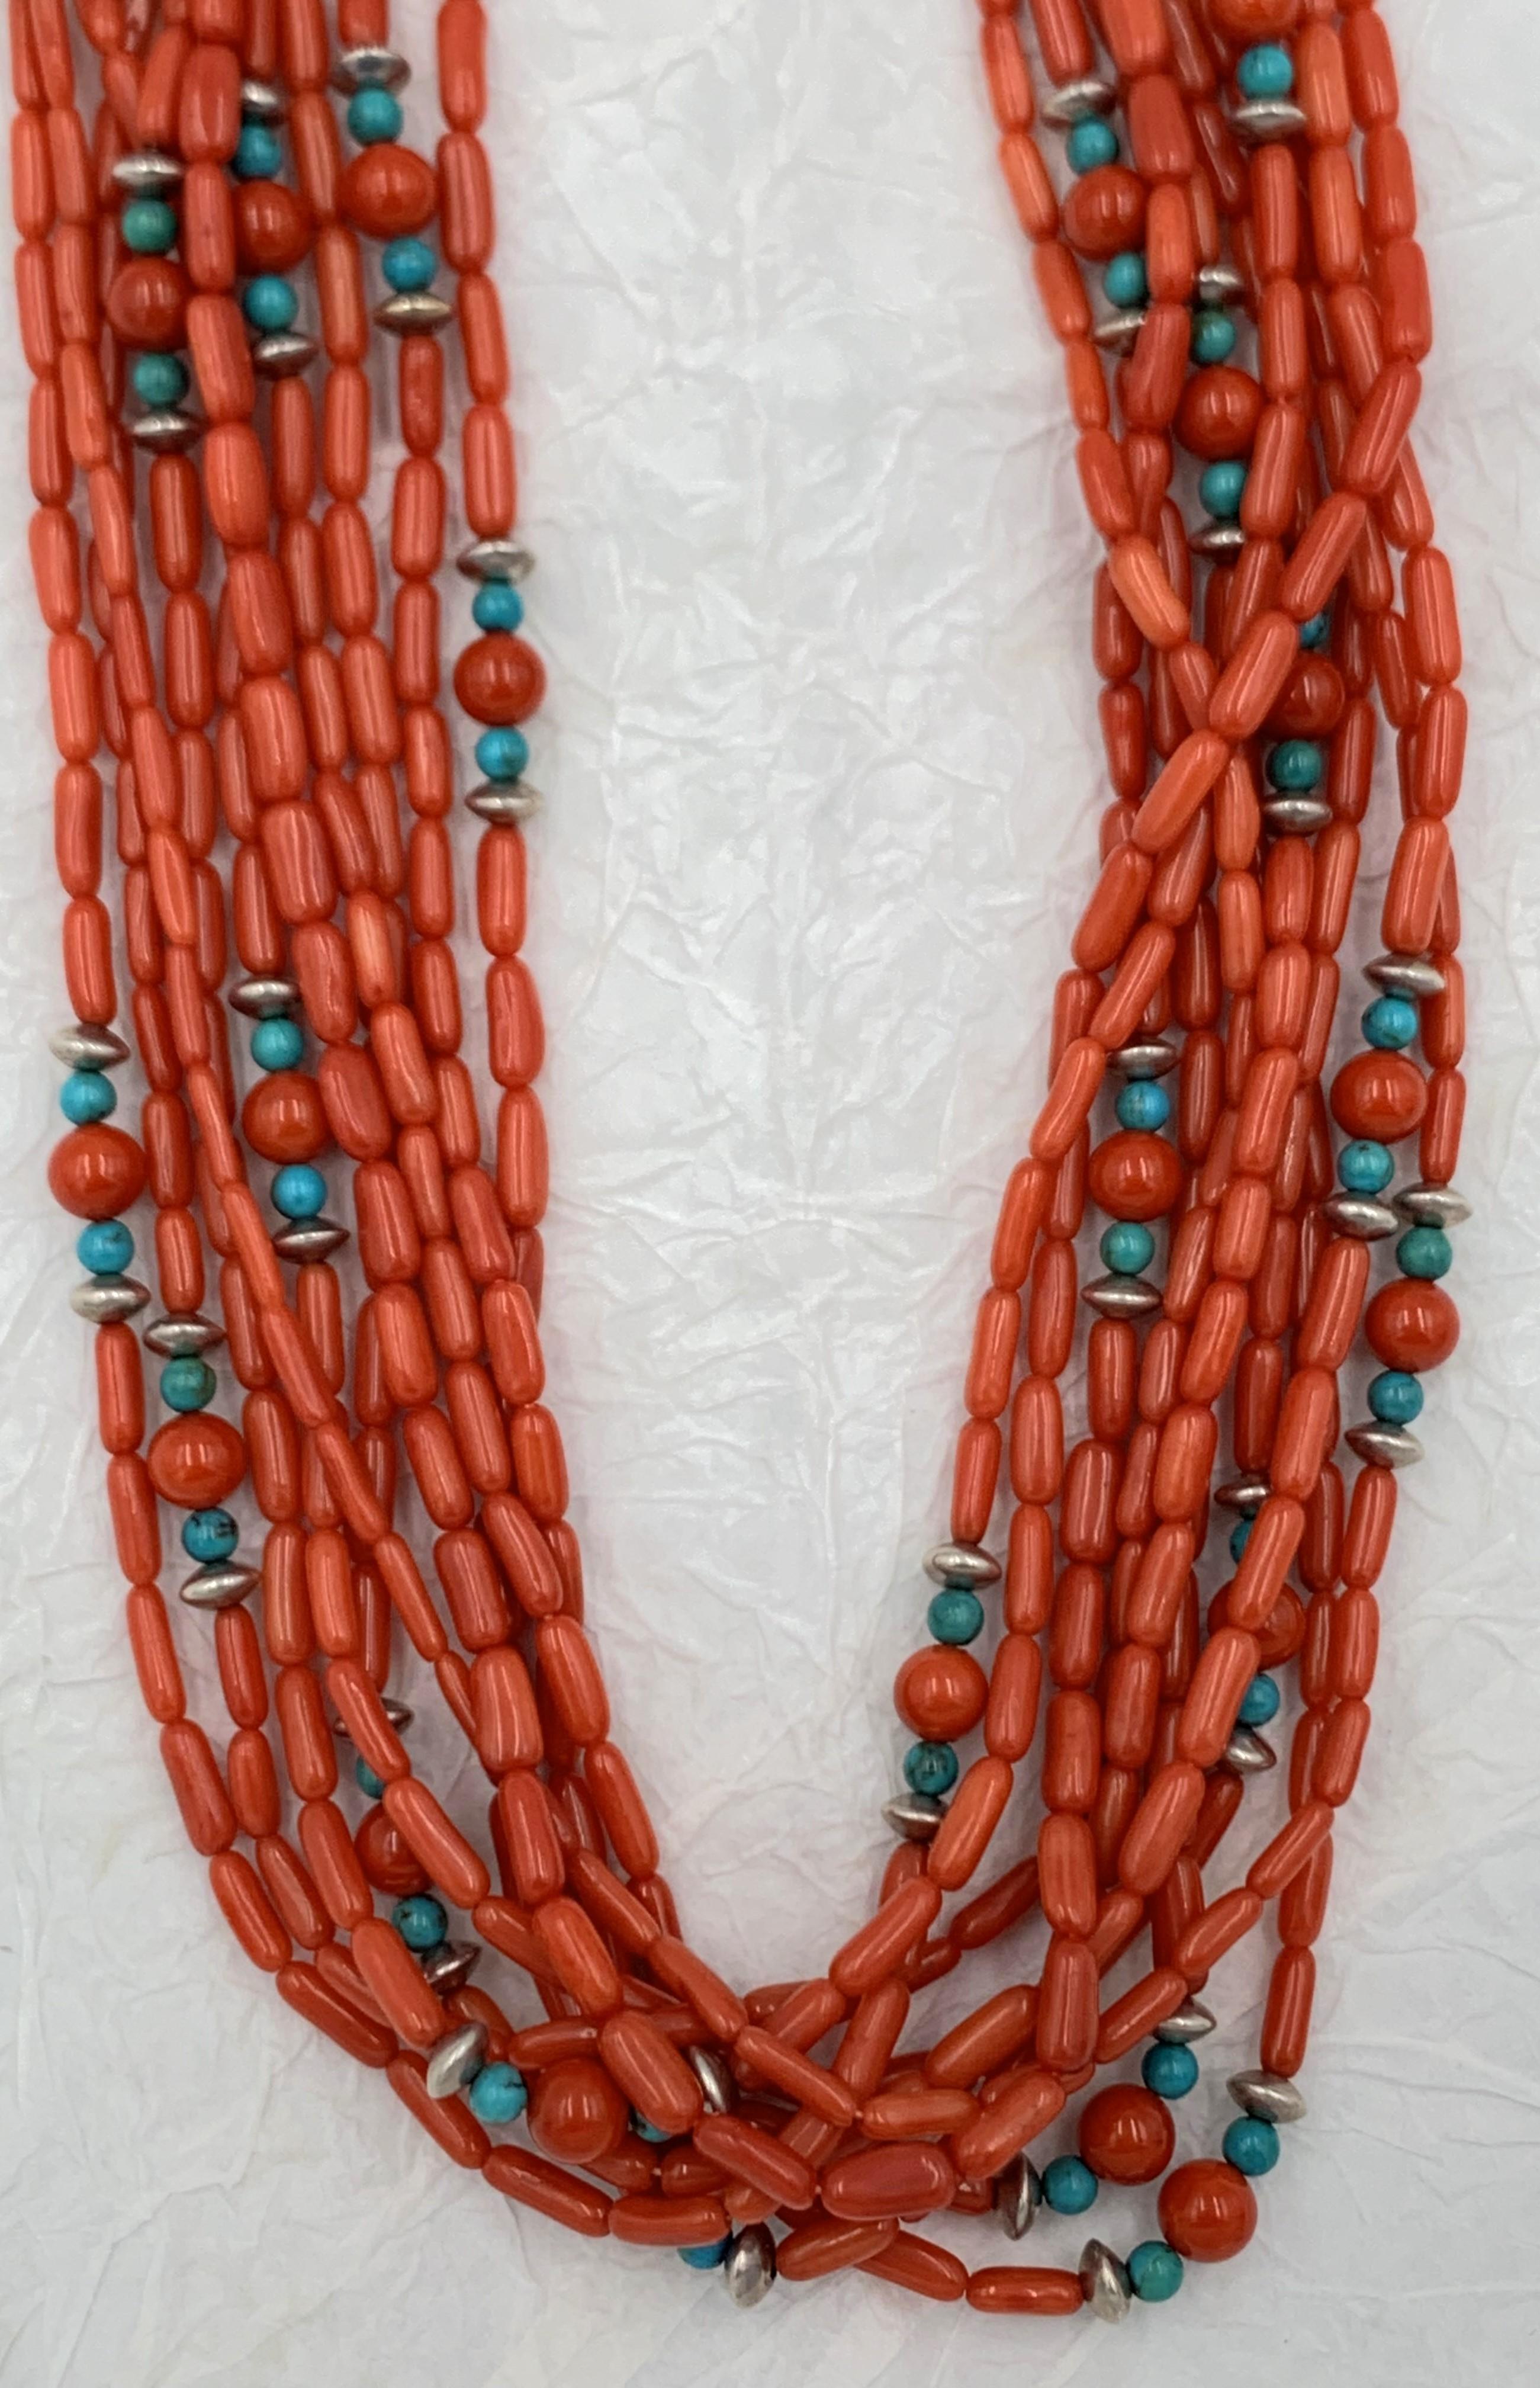 Diese schöne Halskette besteht aus 10 Strängen natürlicher Korallenperlen in Rot-Orange-Tönen. Zwischen den Korallen sind türkisfarbene Steine und Silber eingearbeitet. 


#J1786 @ S